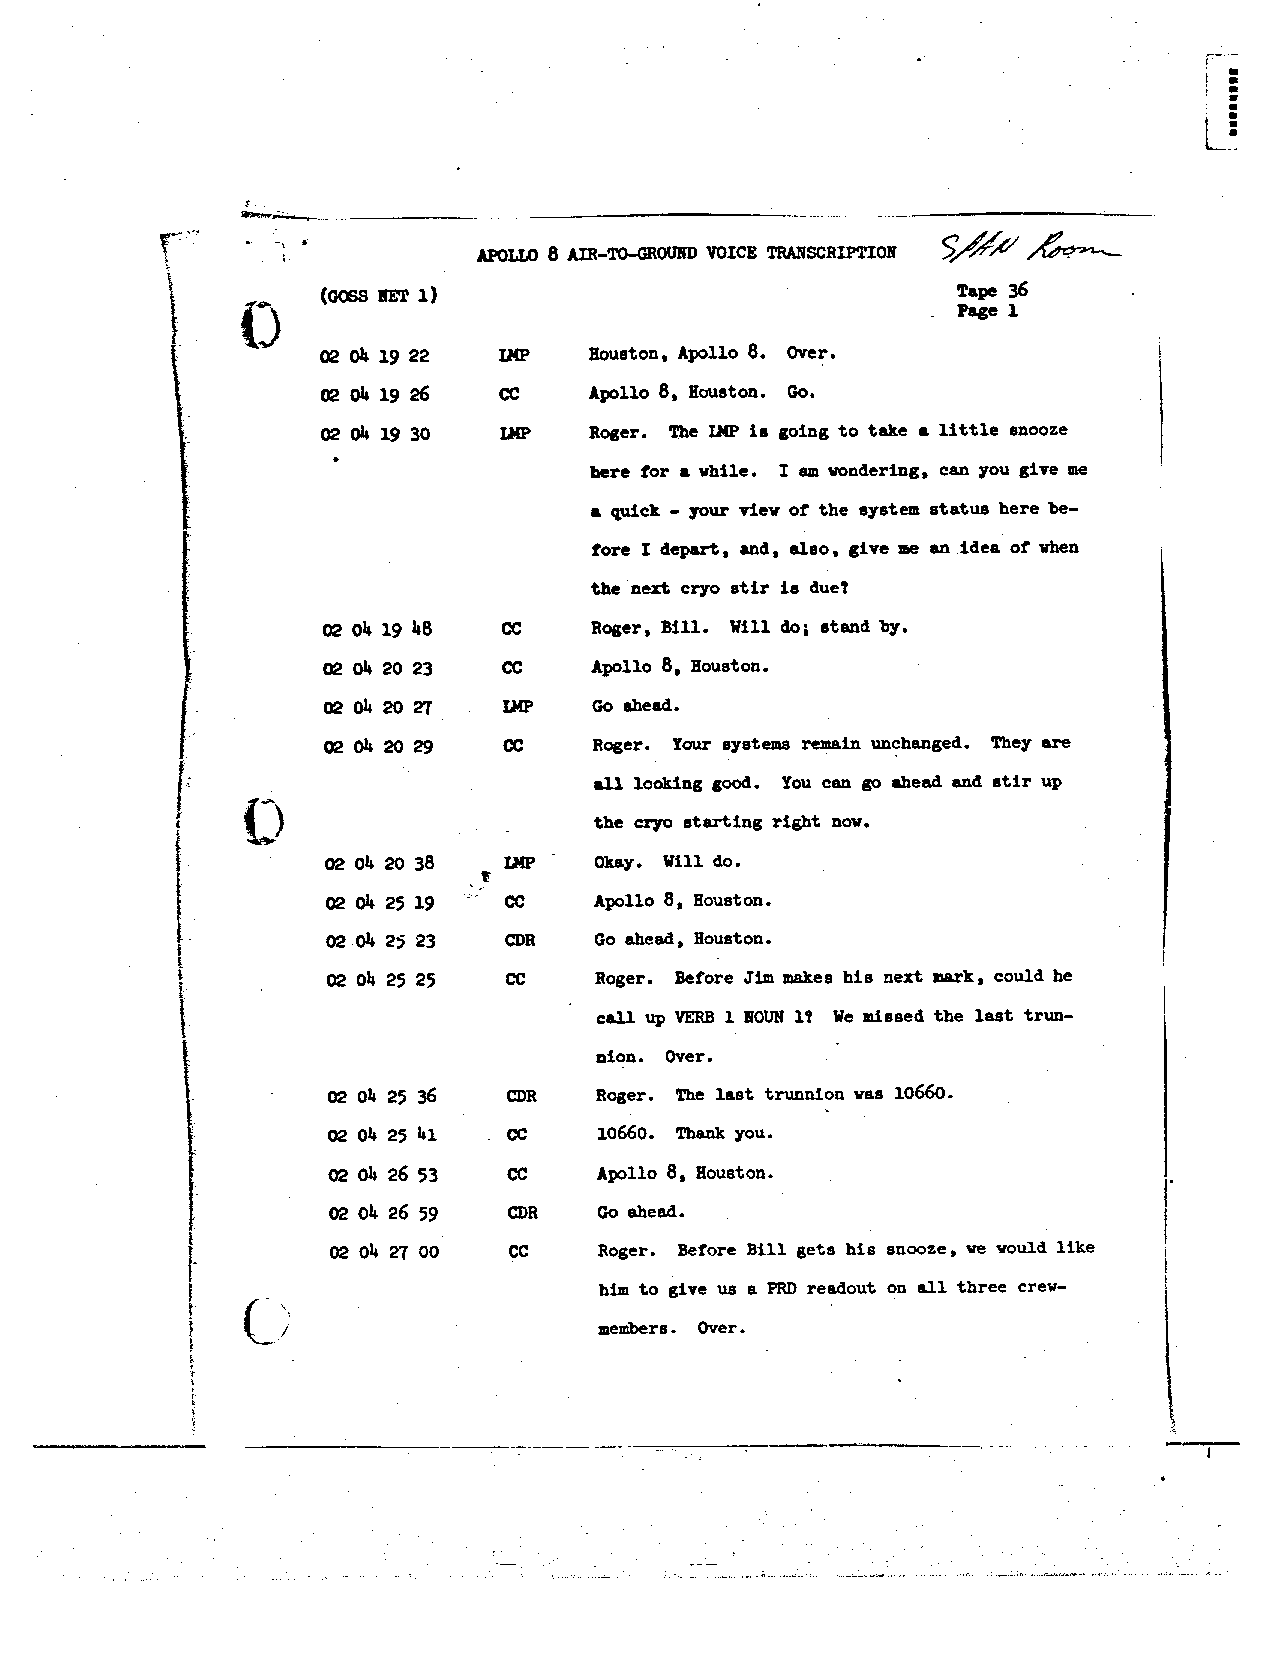 Page 271 of Apollo 8’s original transcript